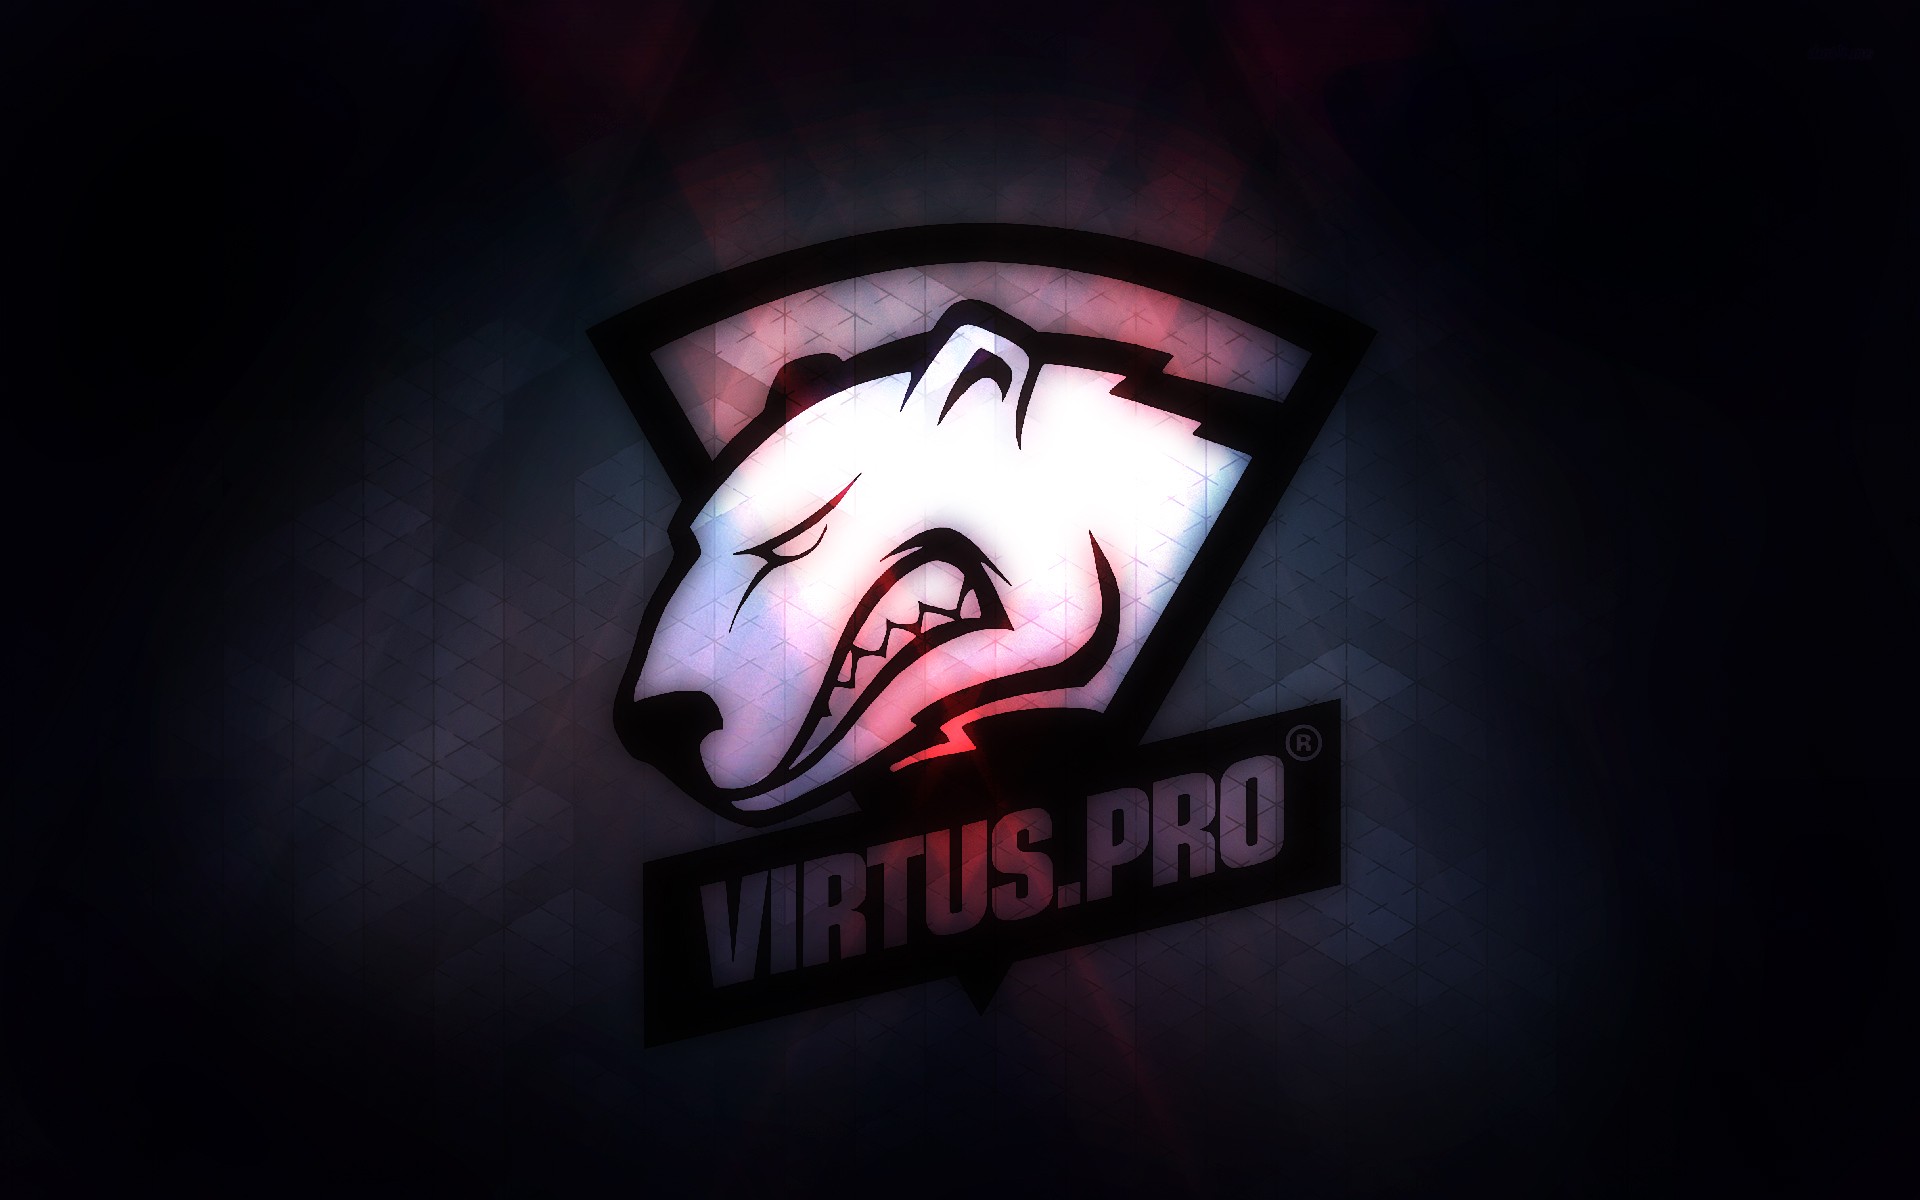 General 1920x1200 Counter-Strike: Global Offensive Virtus.pro PC gaming logo digital art